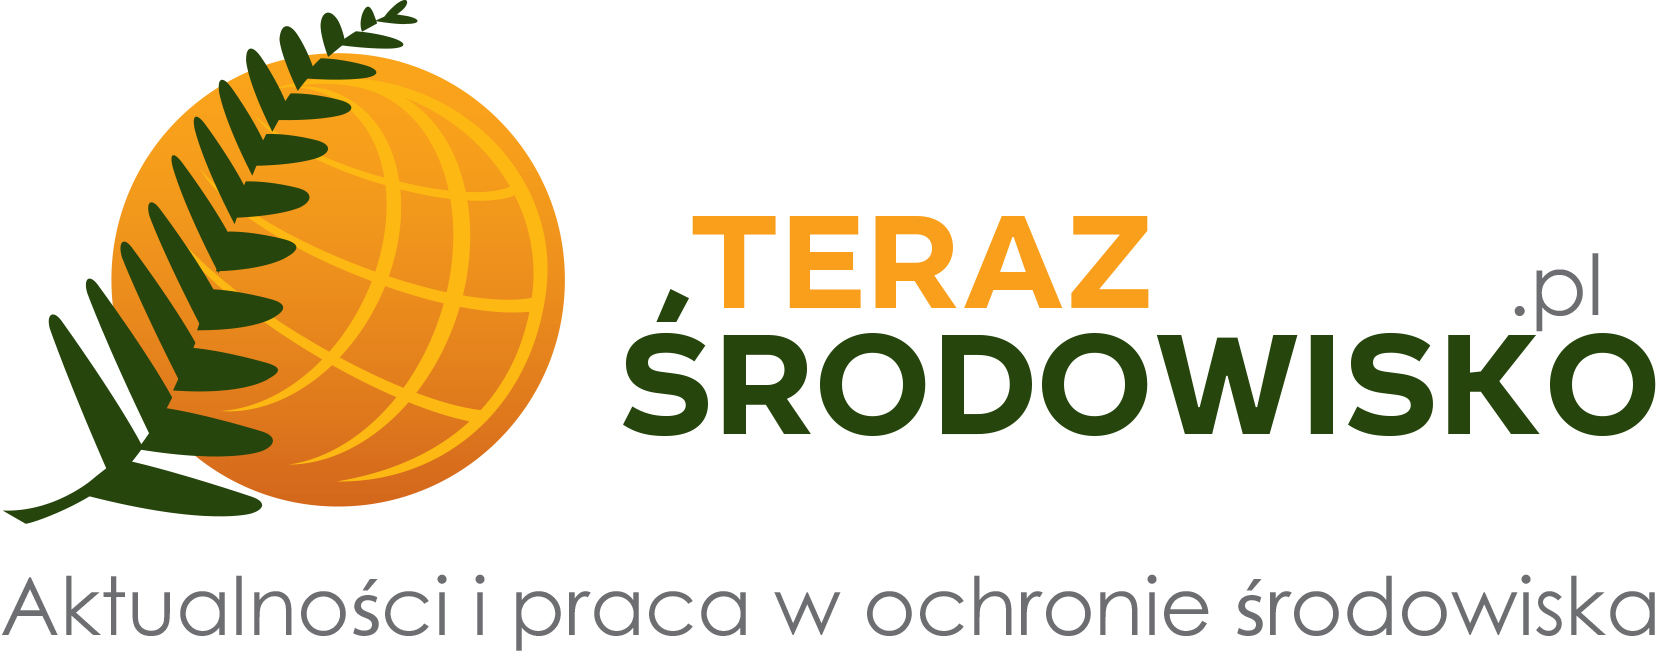 WWW.TERAZ-SRODOWISKO.PL